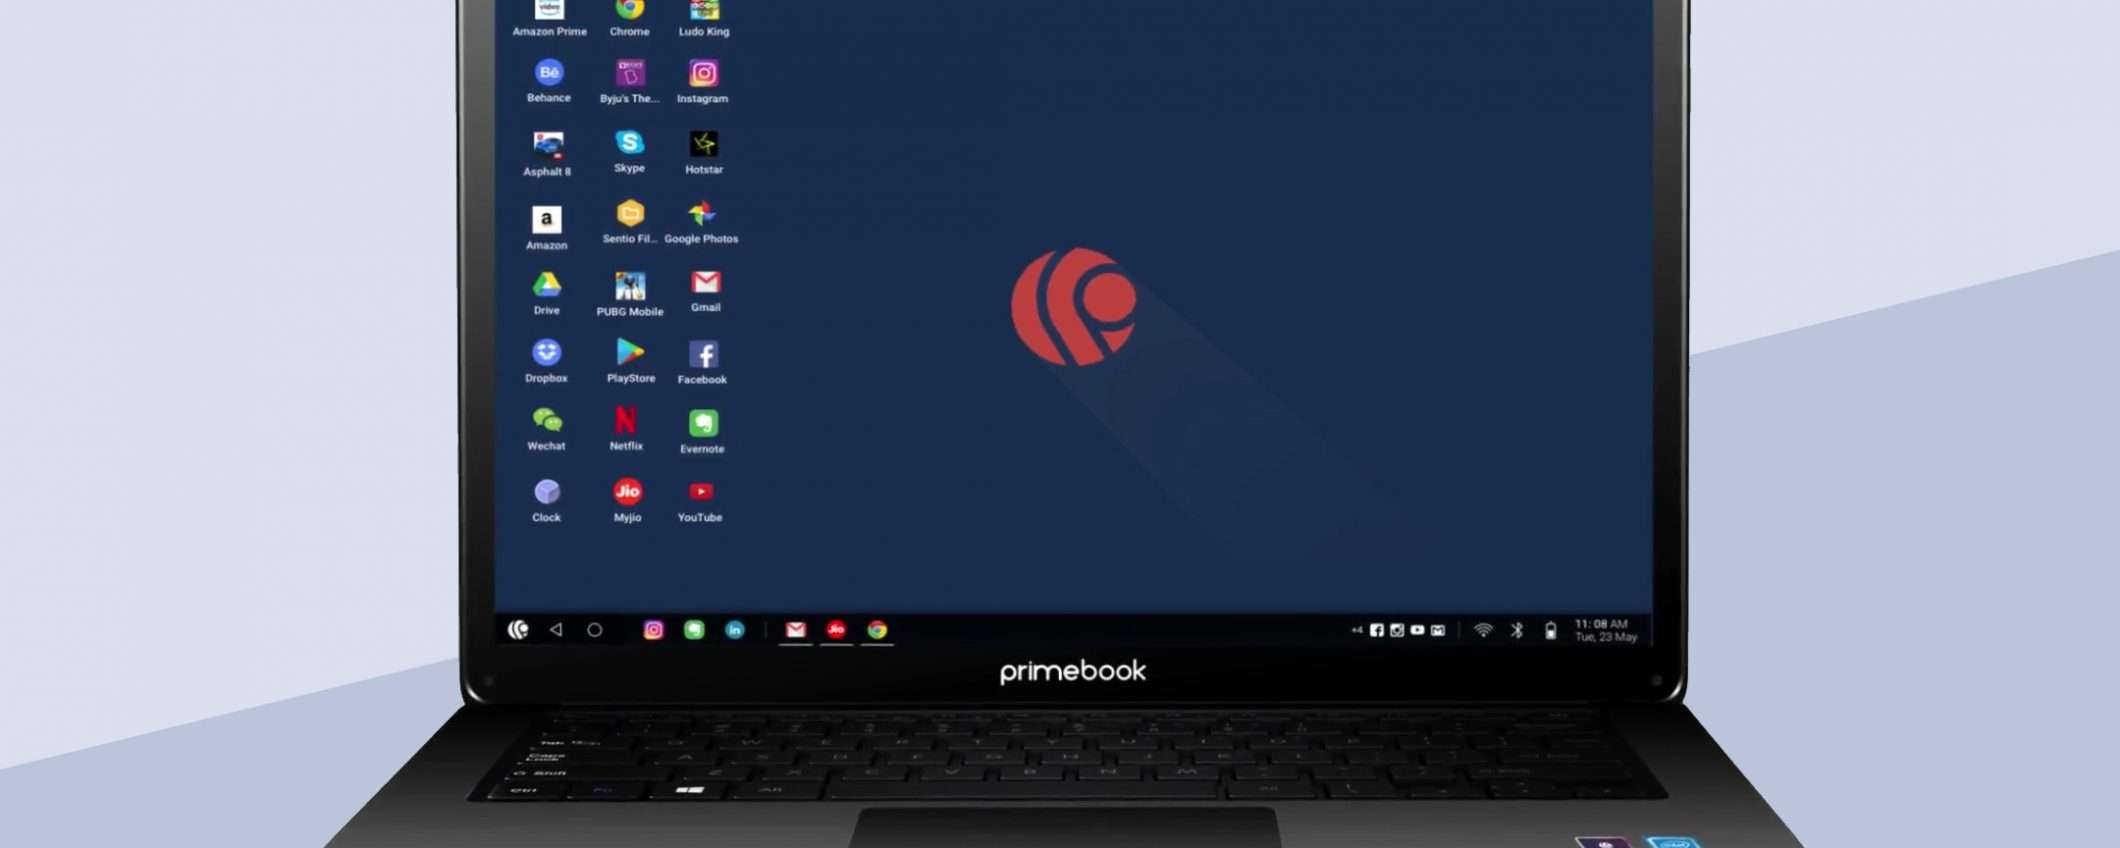 Il progetto PrimeOS porta Android su PC e laptop